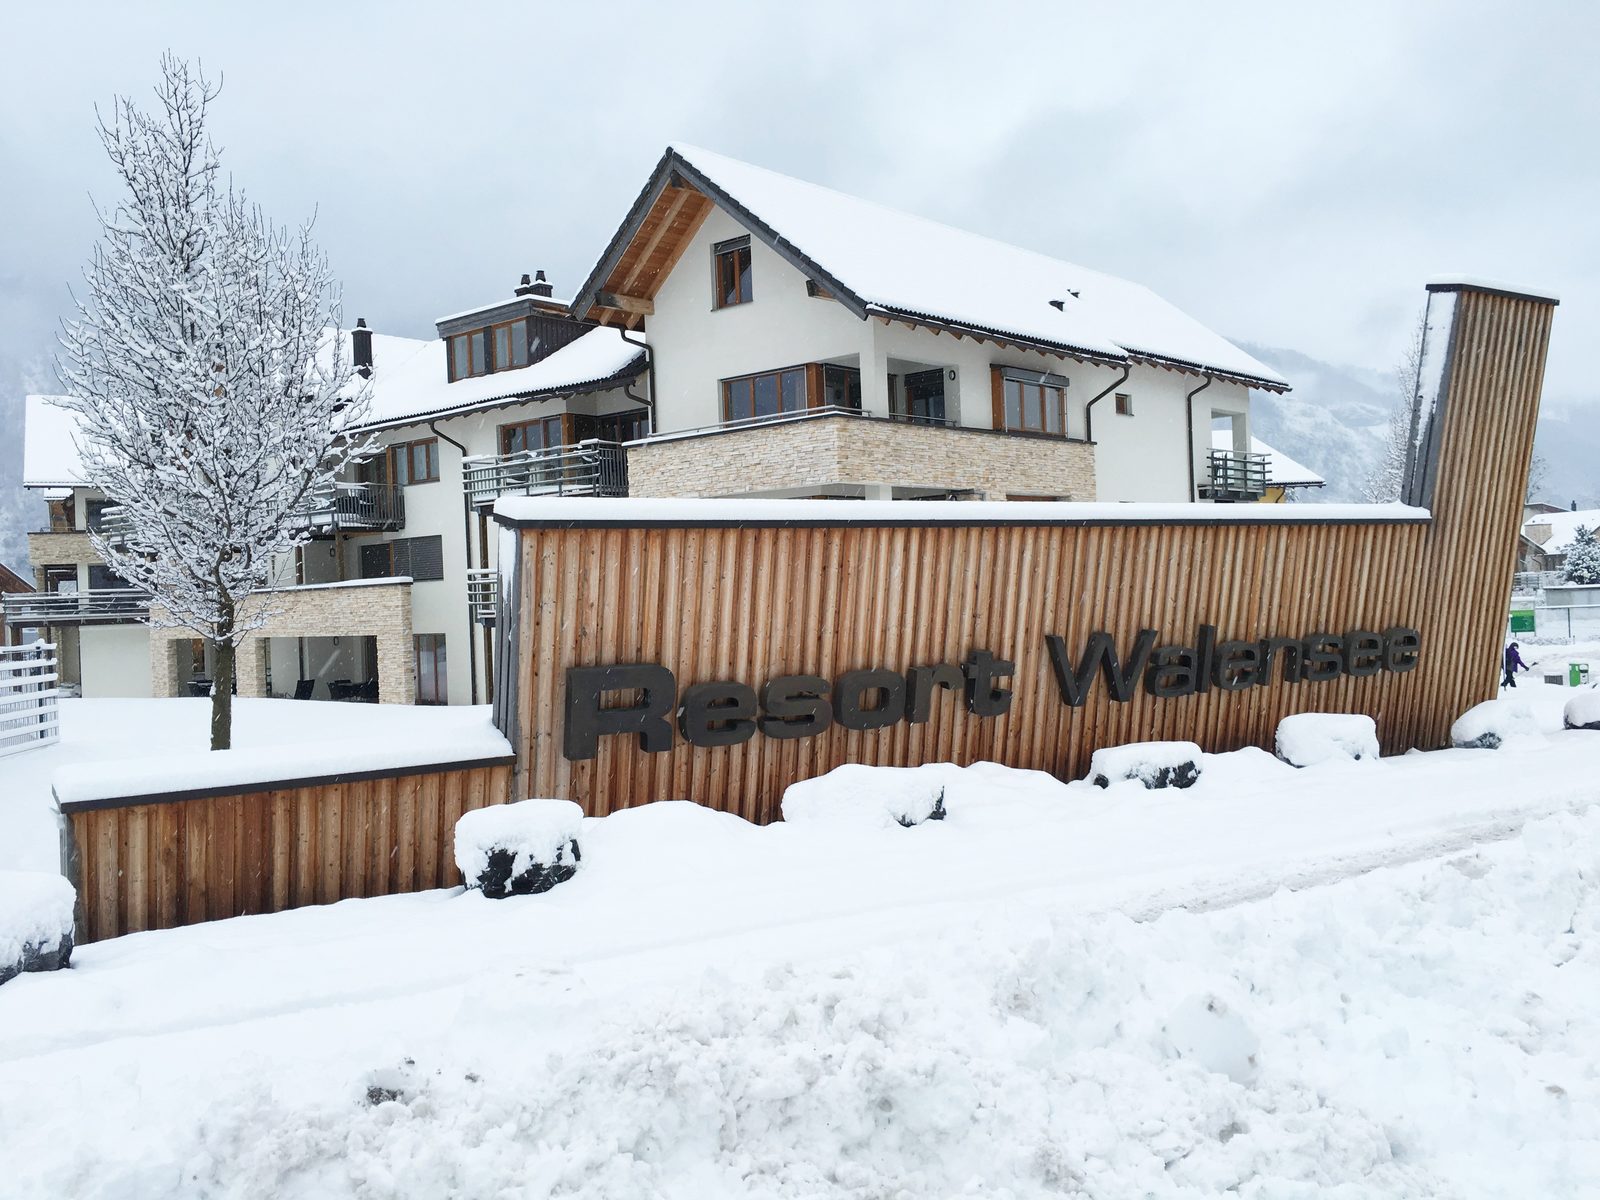 Resort Walensee, am Fuß des Flumserbergs in der Schweiz, ist der ideale Wintersportort für die ganze Familie.